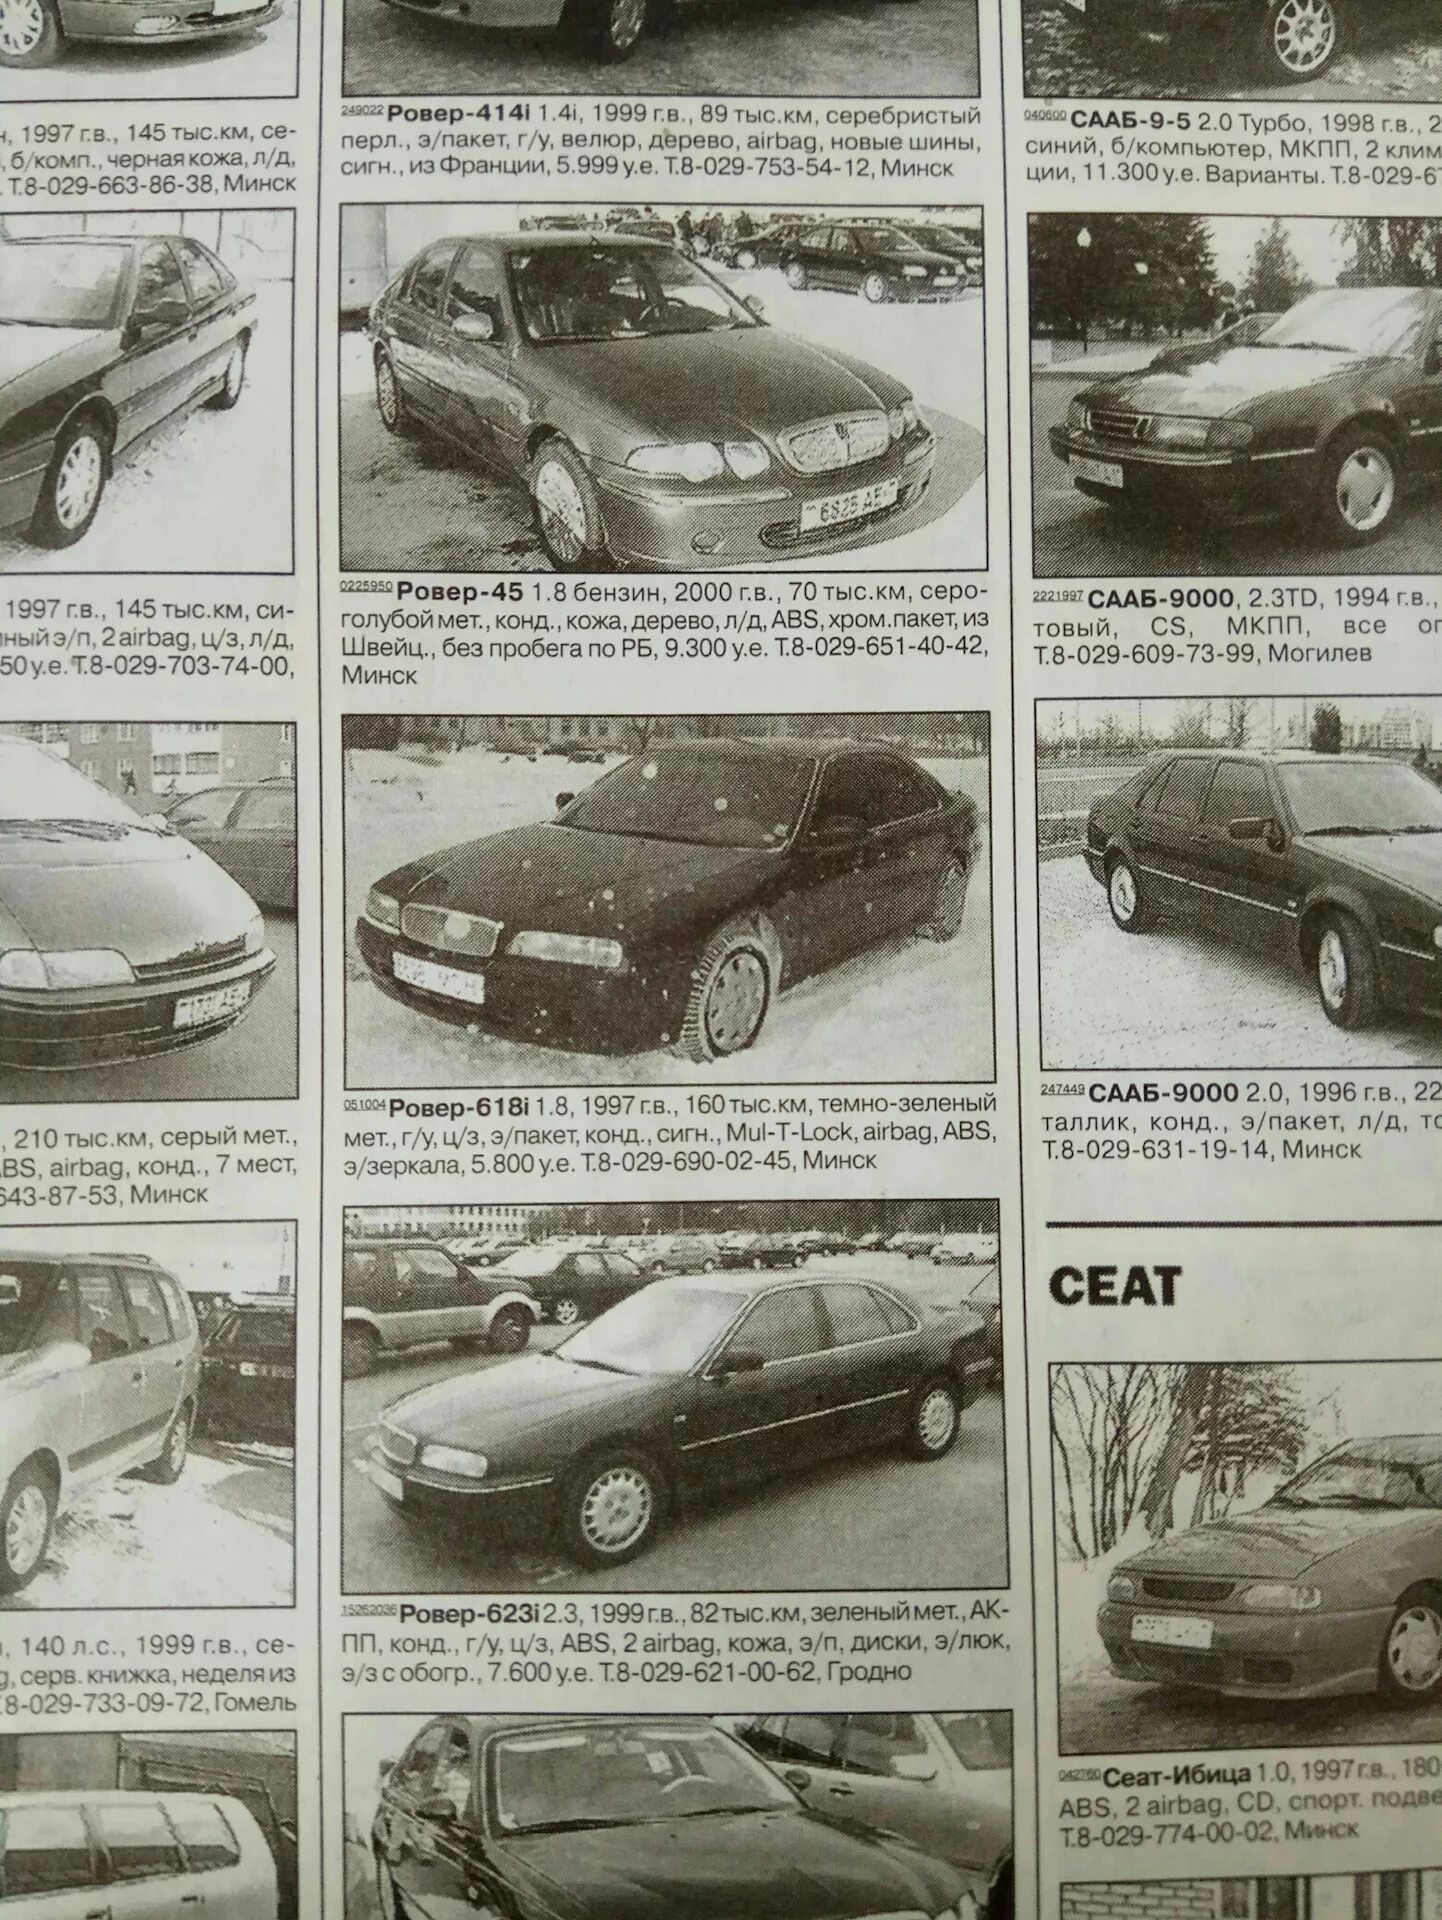 1997 года архив. Журнал авто из рук в руки. Газета из рук в руки автомобили. Газеты авто 90-х. Старые автомобильные журналы.